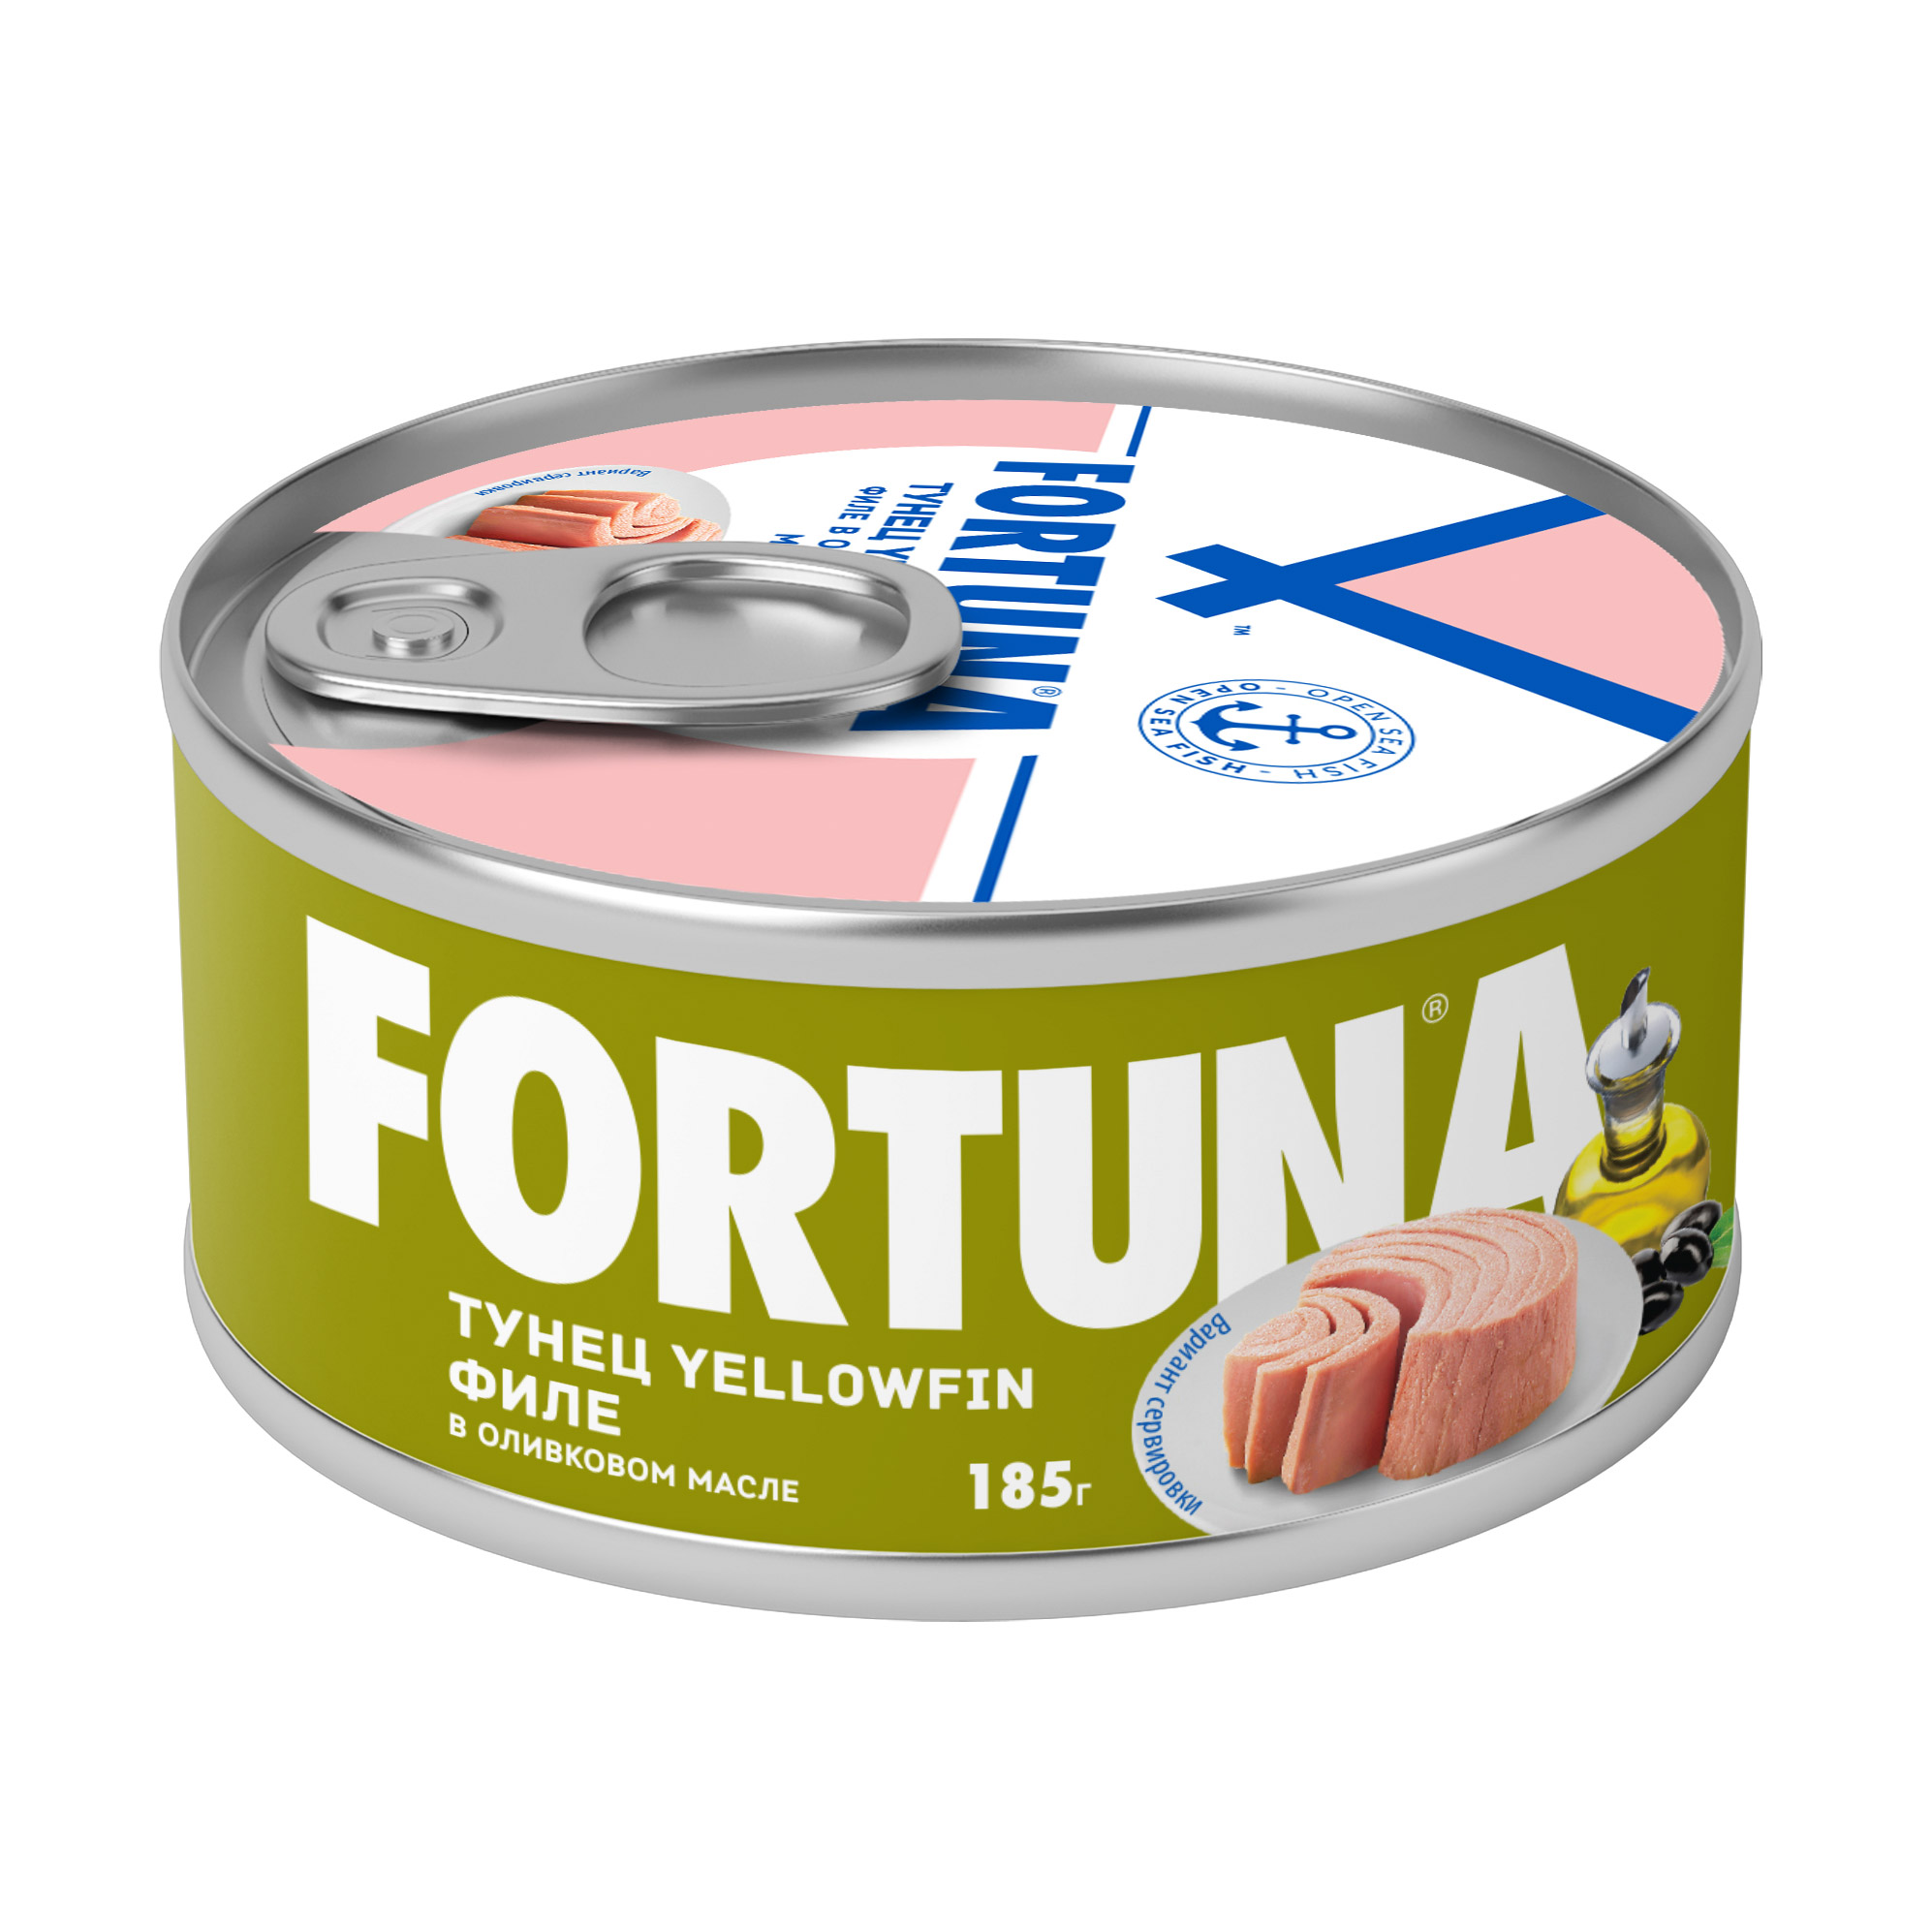 Тунец FORTUNA Yellowfin филе в оливковом масле 185 г тунец fortuna в собственном соку филе 185 г